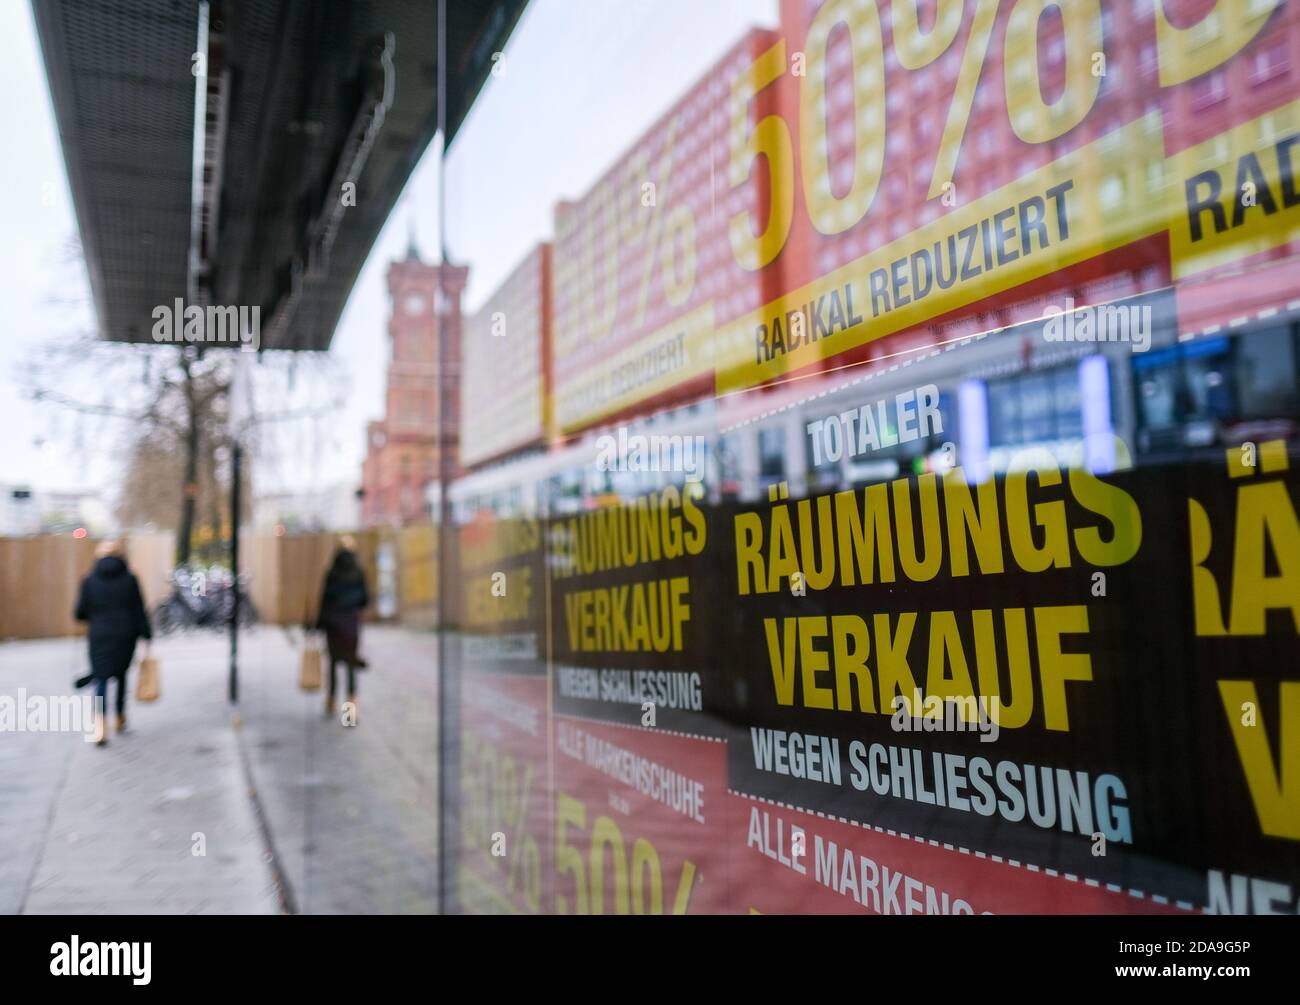 Berlin Alexanderplatz Poster Stockfotos und -bilder Kaufen - Alamy